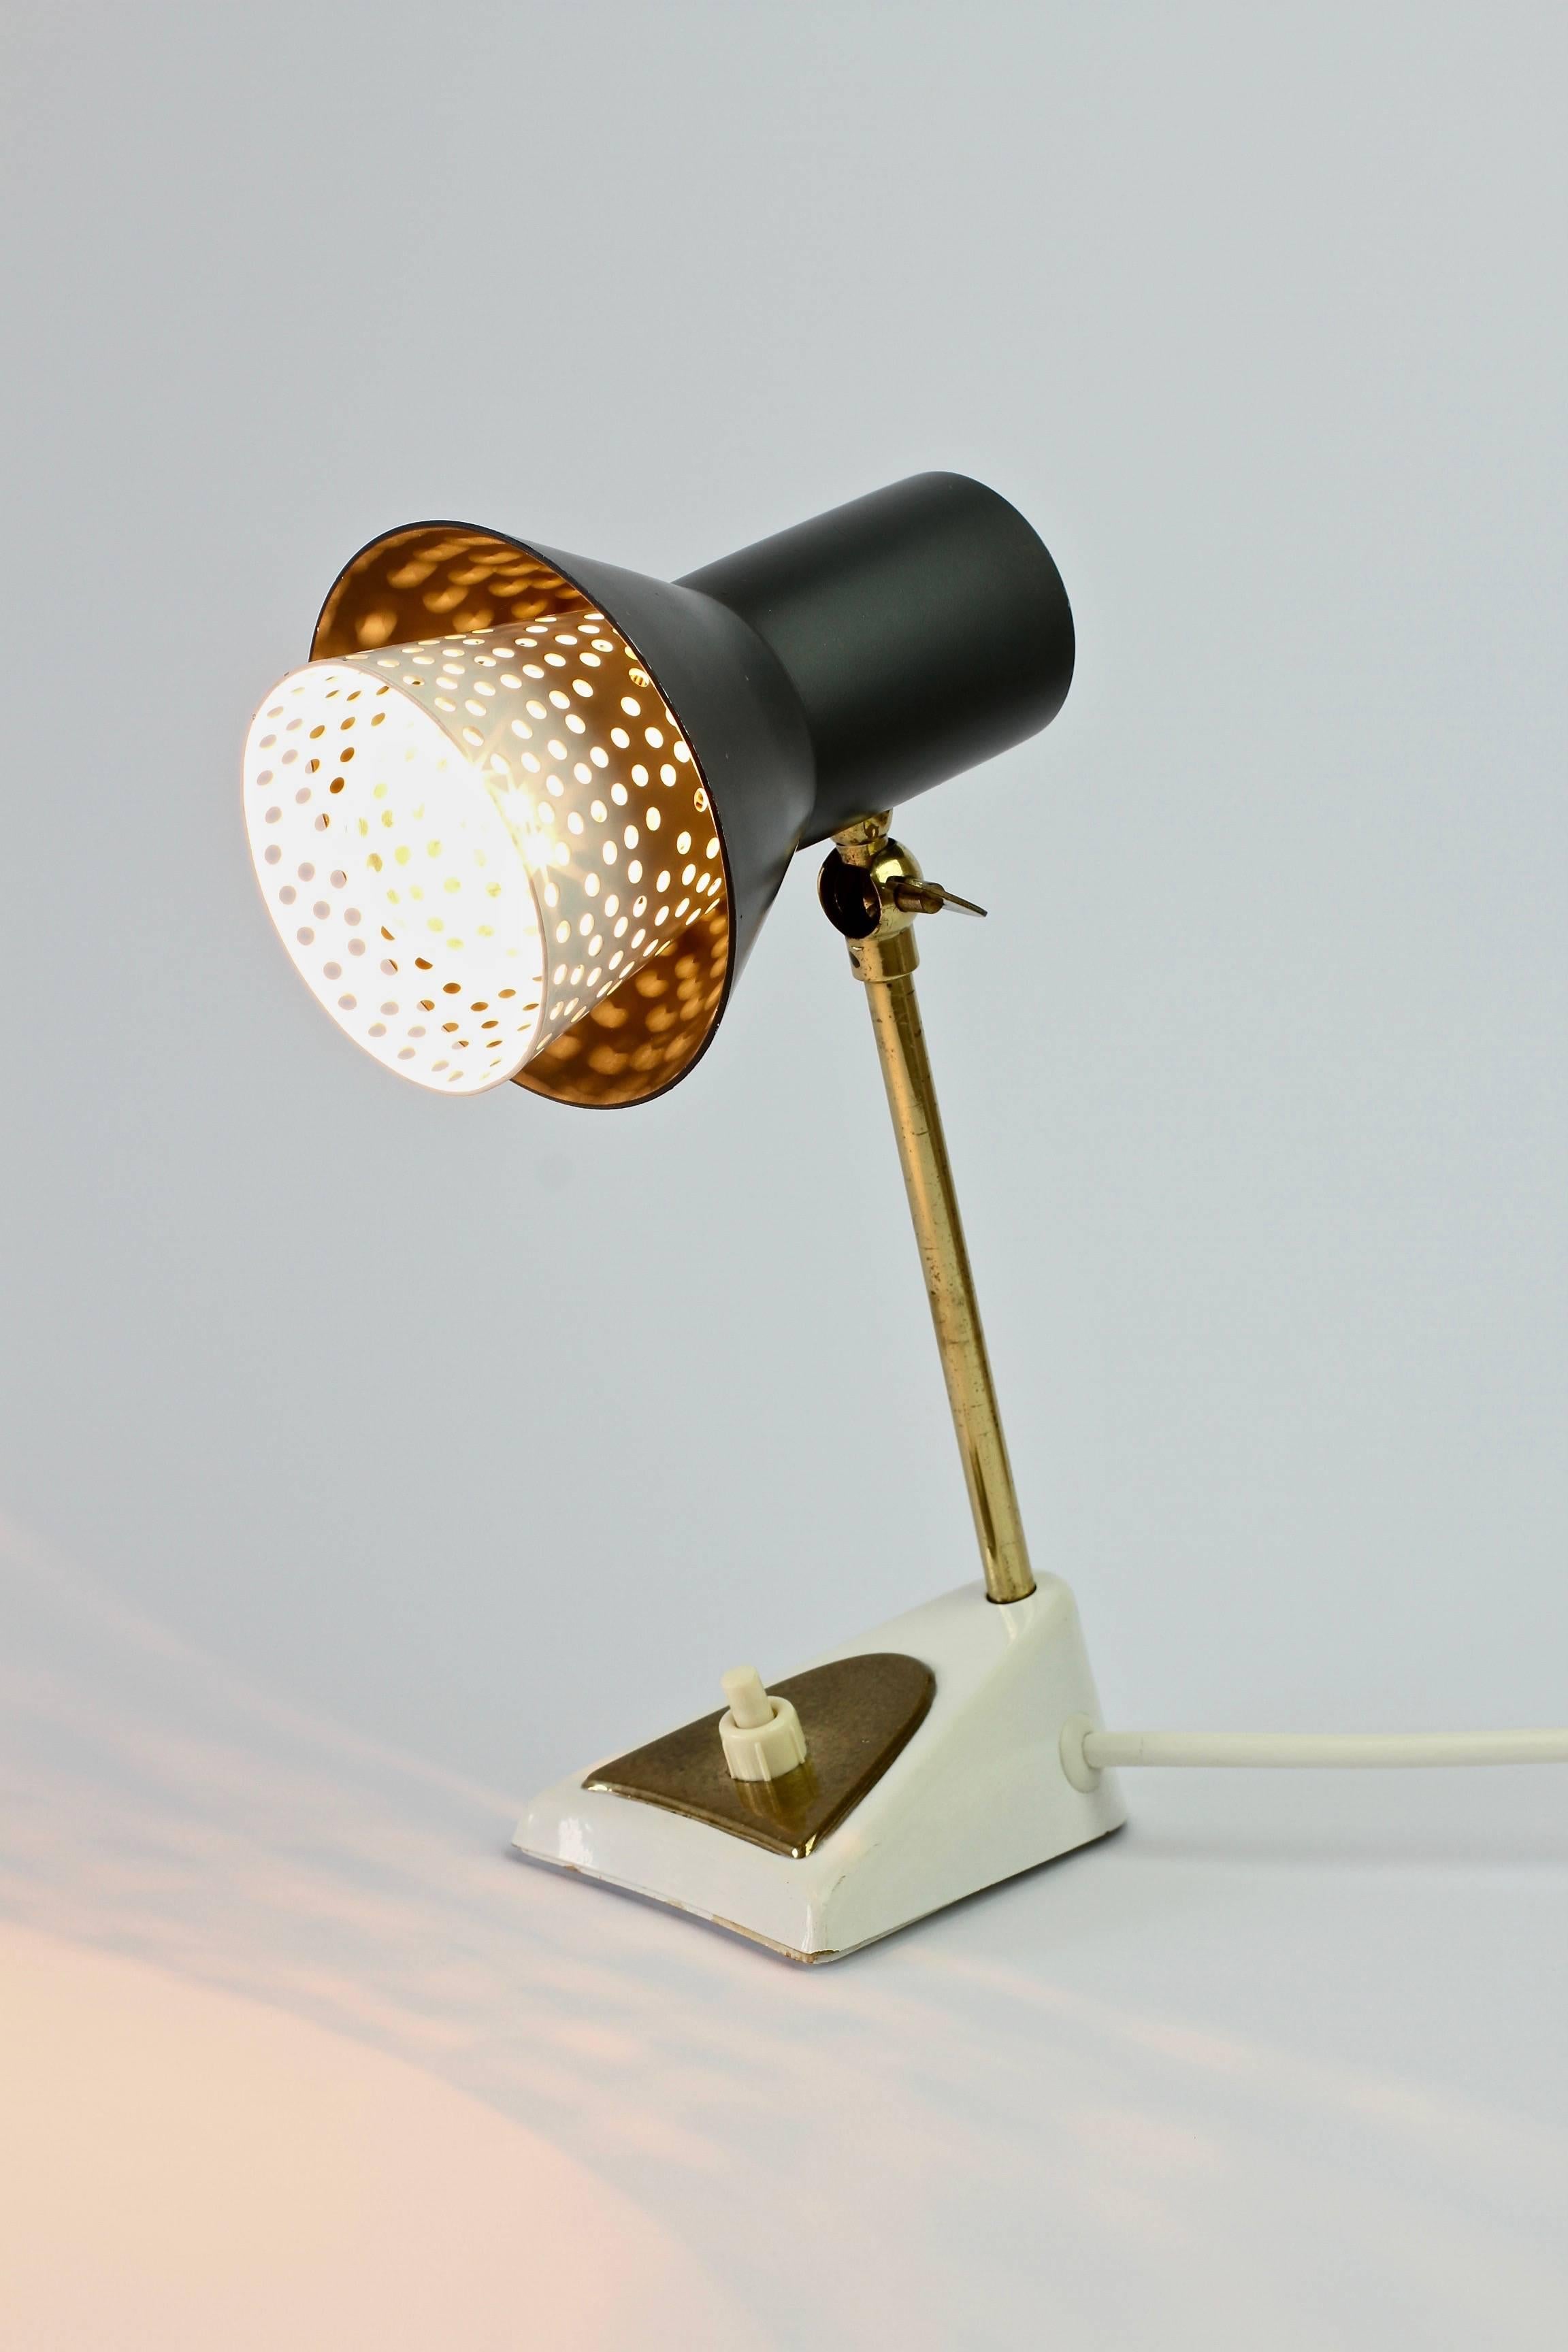 Moderne Tisch- oder Schreibtischlampe im Stil von Mathieu Matégot:: ca. 1950-1960er Jahre. Der perforierte Innenschirm aus weißem Metall ähnelt auch den Leuchten des deutschen Designers Ernst Igl für Hillebrand Leuchten. 

Die Lampe benötigt eine